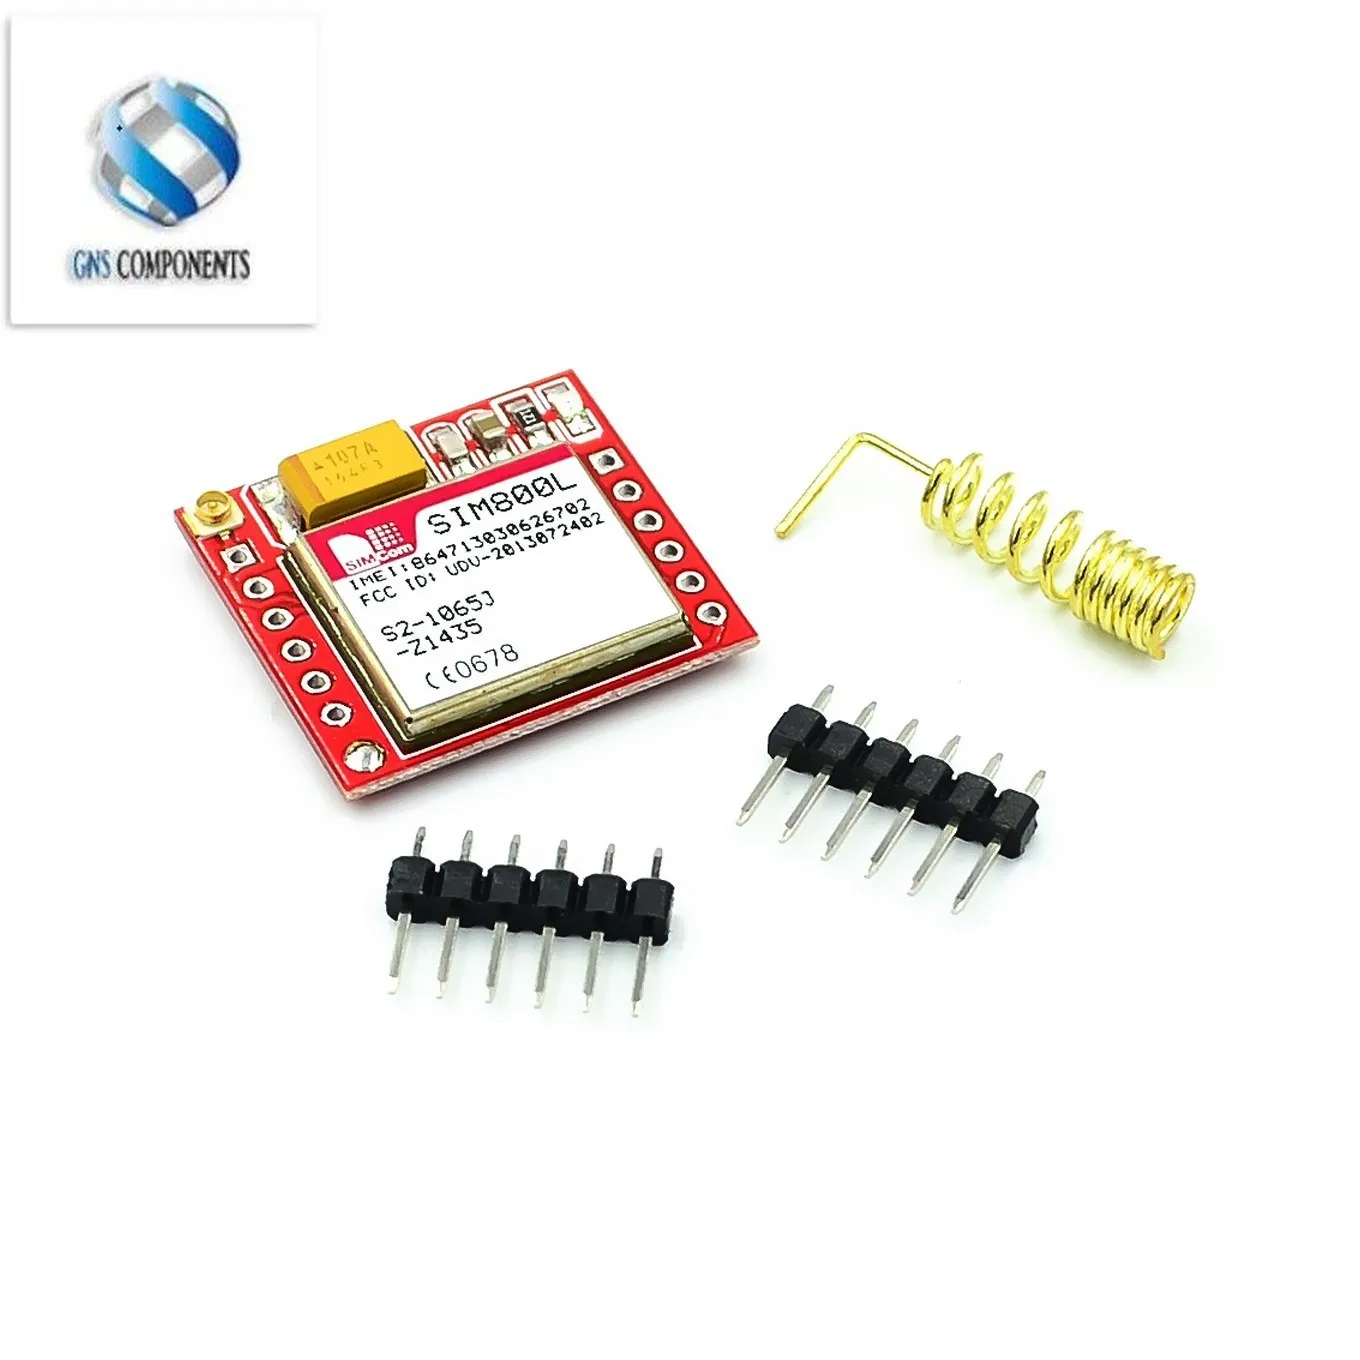 

10pcs gsm module Smallest SIM800L GPRS GSM Module MicroSIM Card Core BOard Quad-band TTL Serial Port For arduino